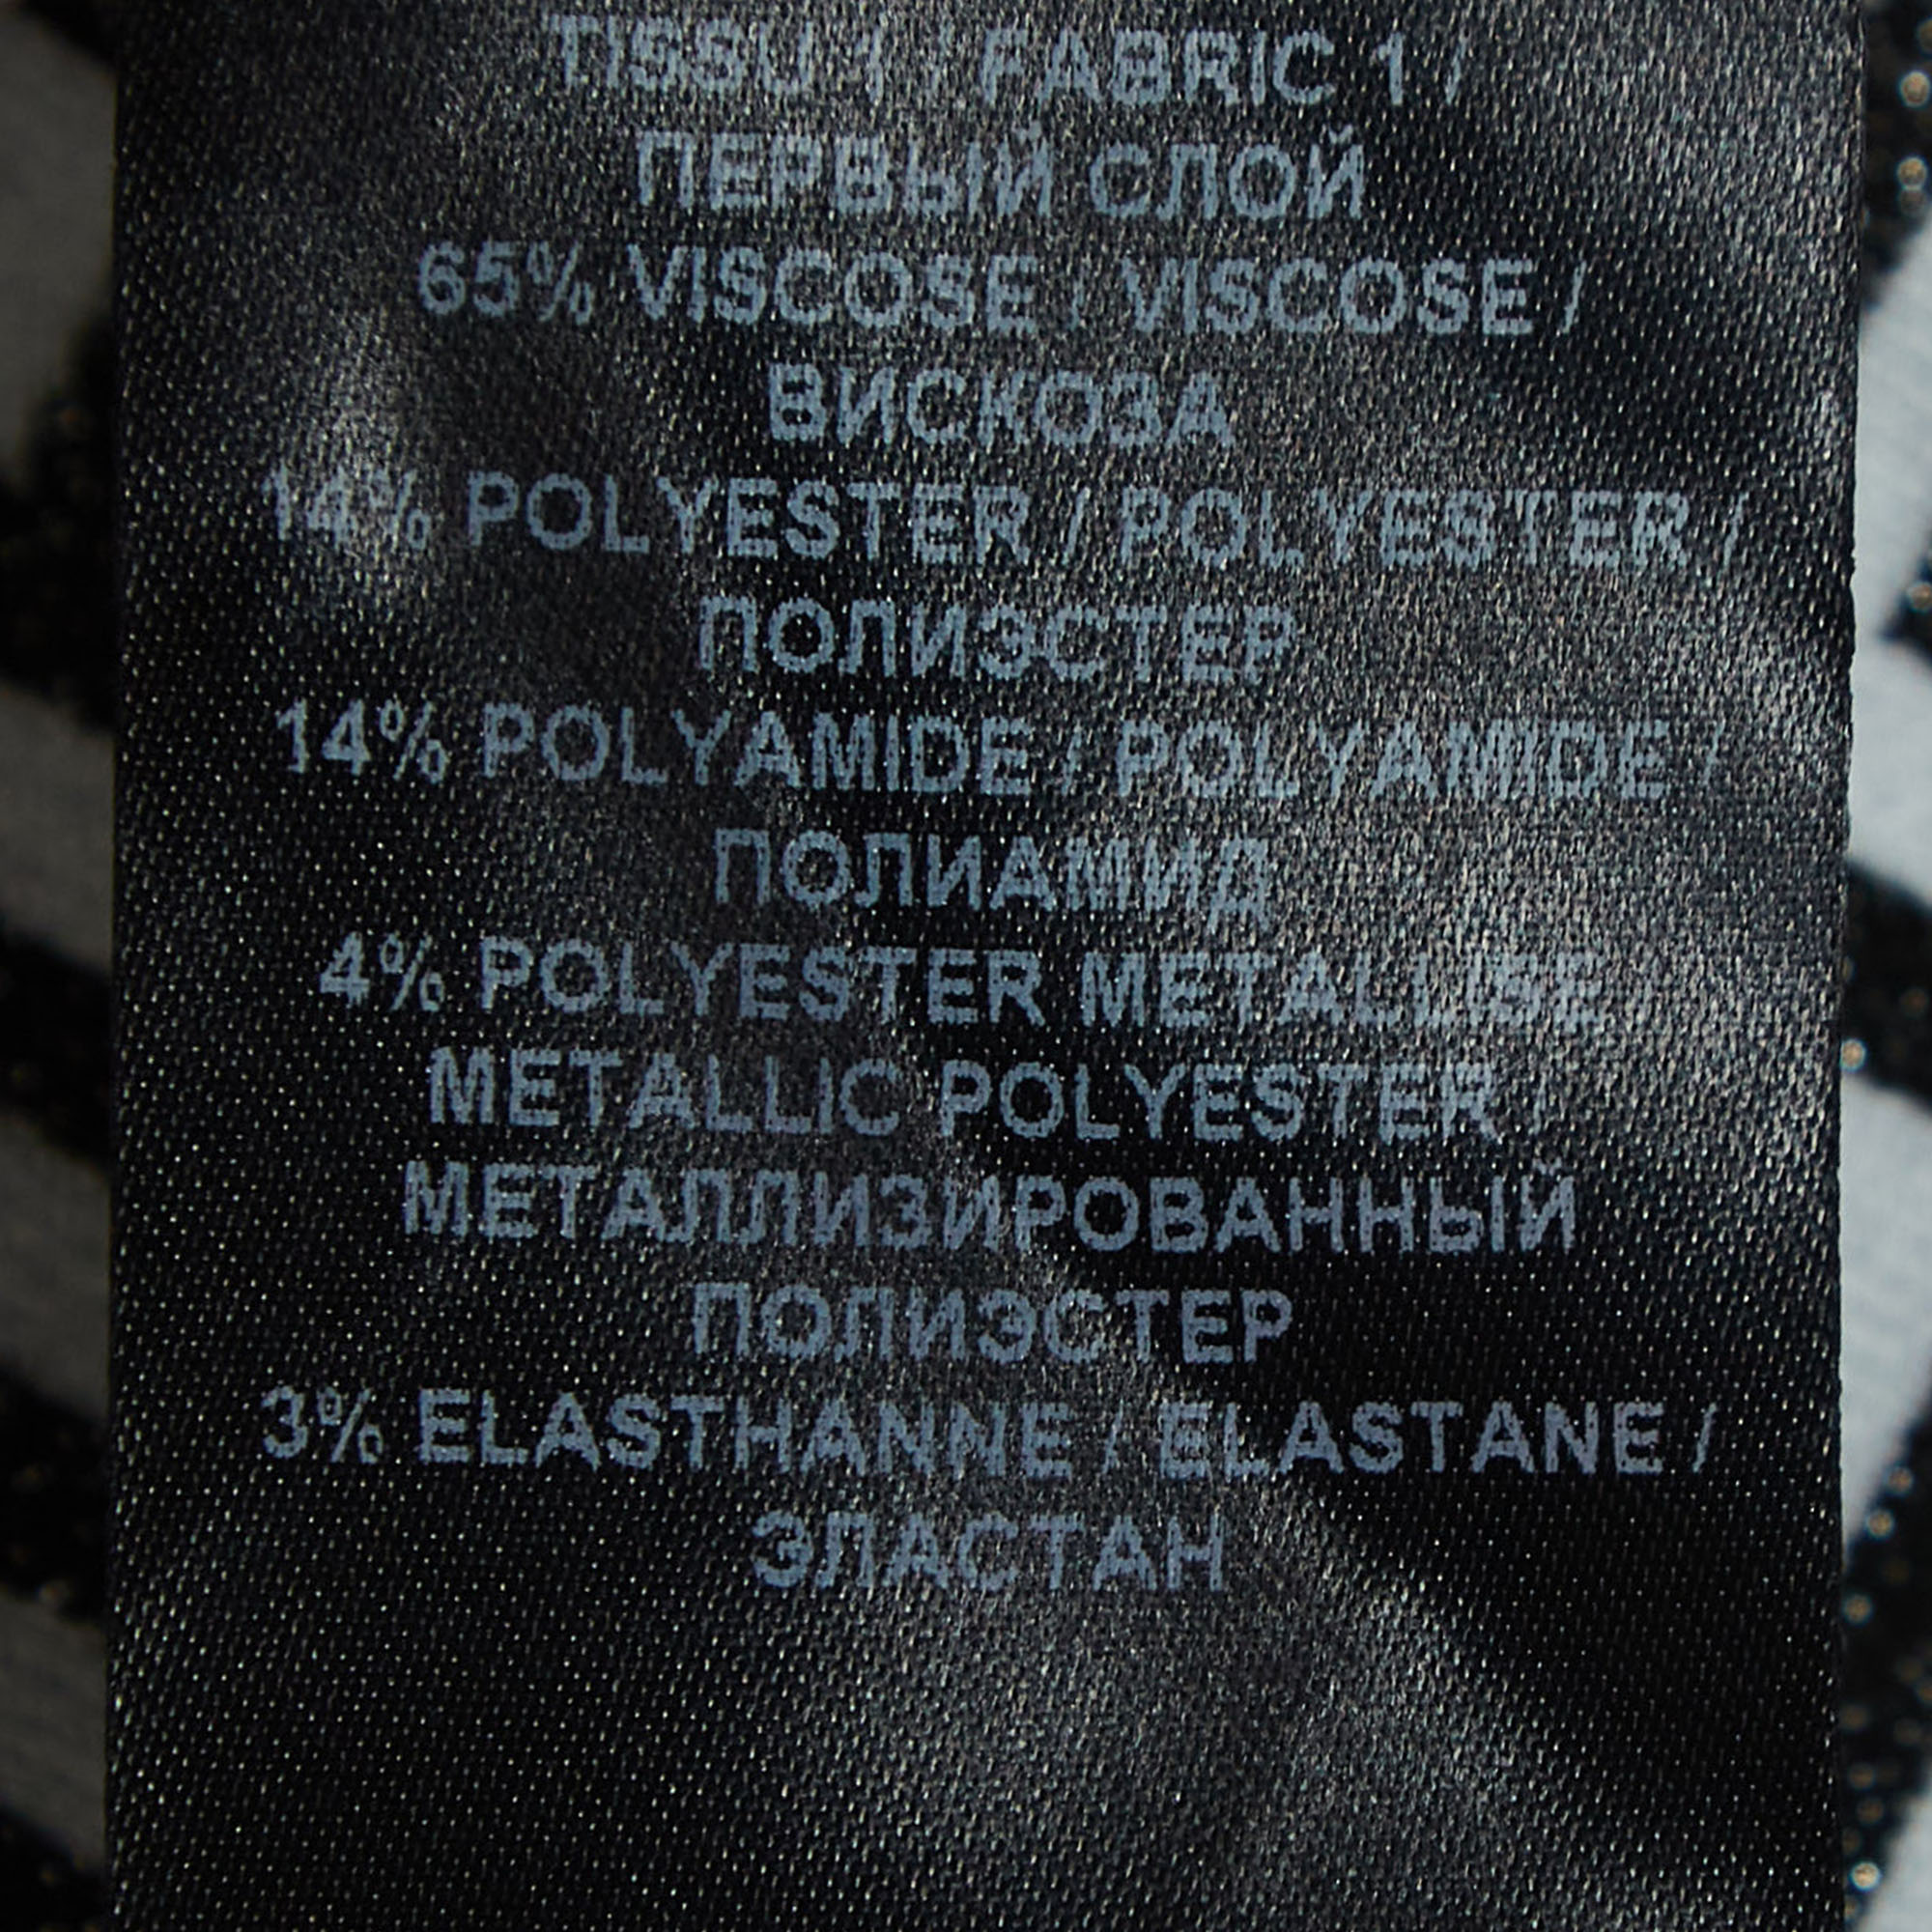 Balmain Monochrome Monogram Jacquard Knit Crop Top S